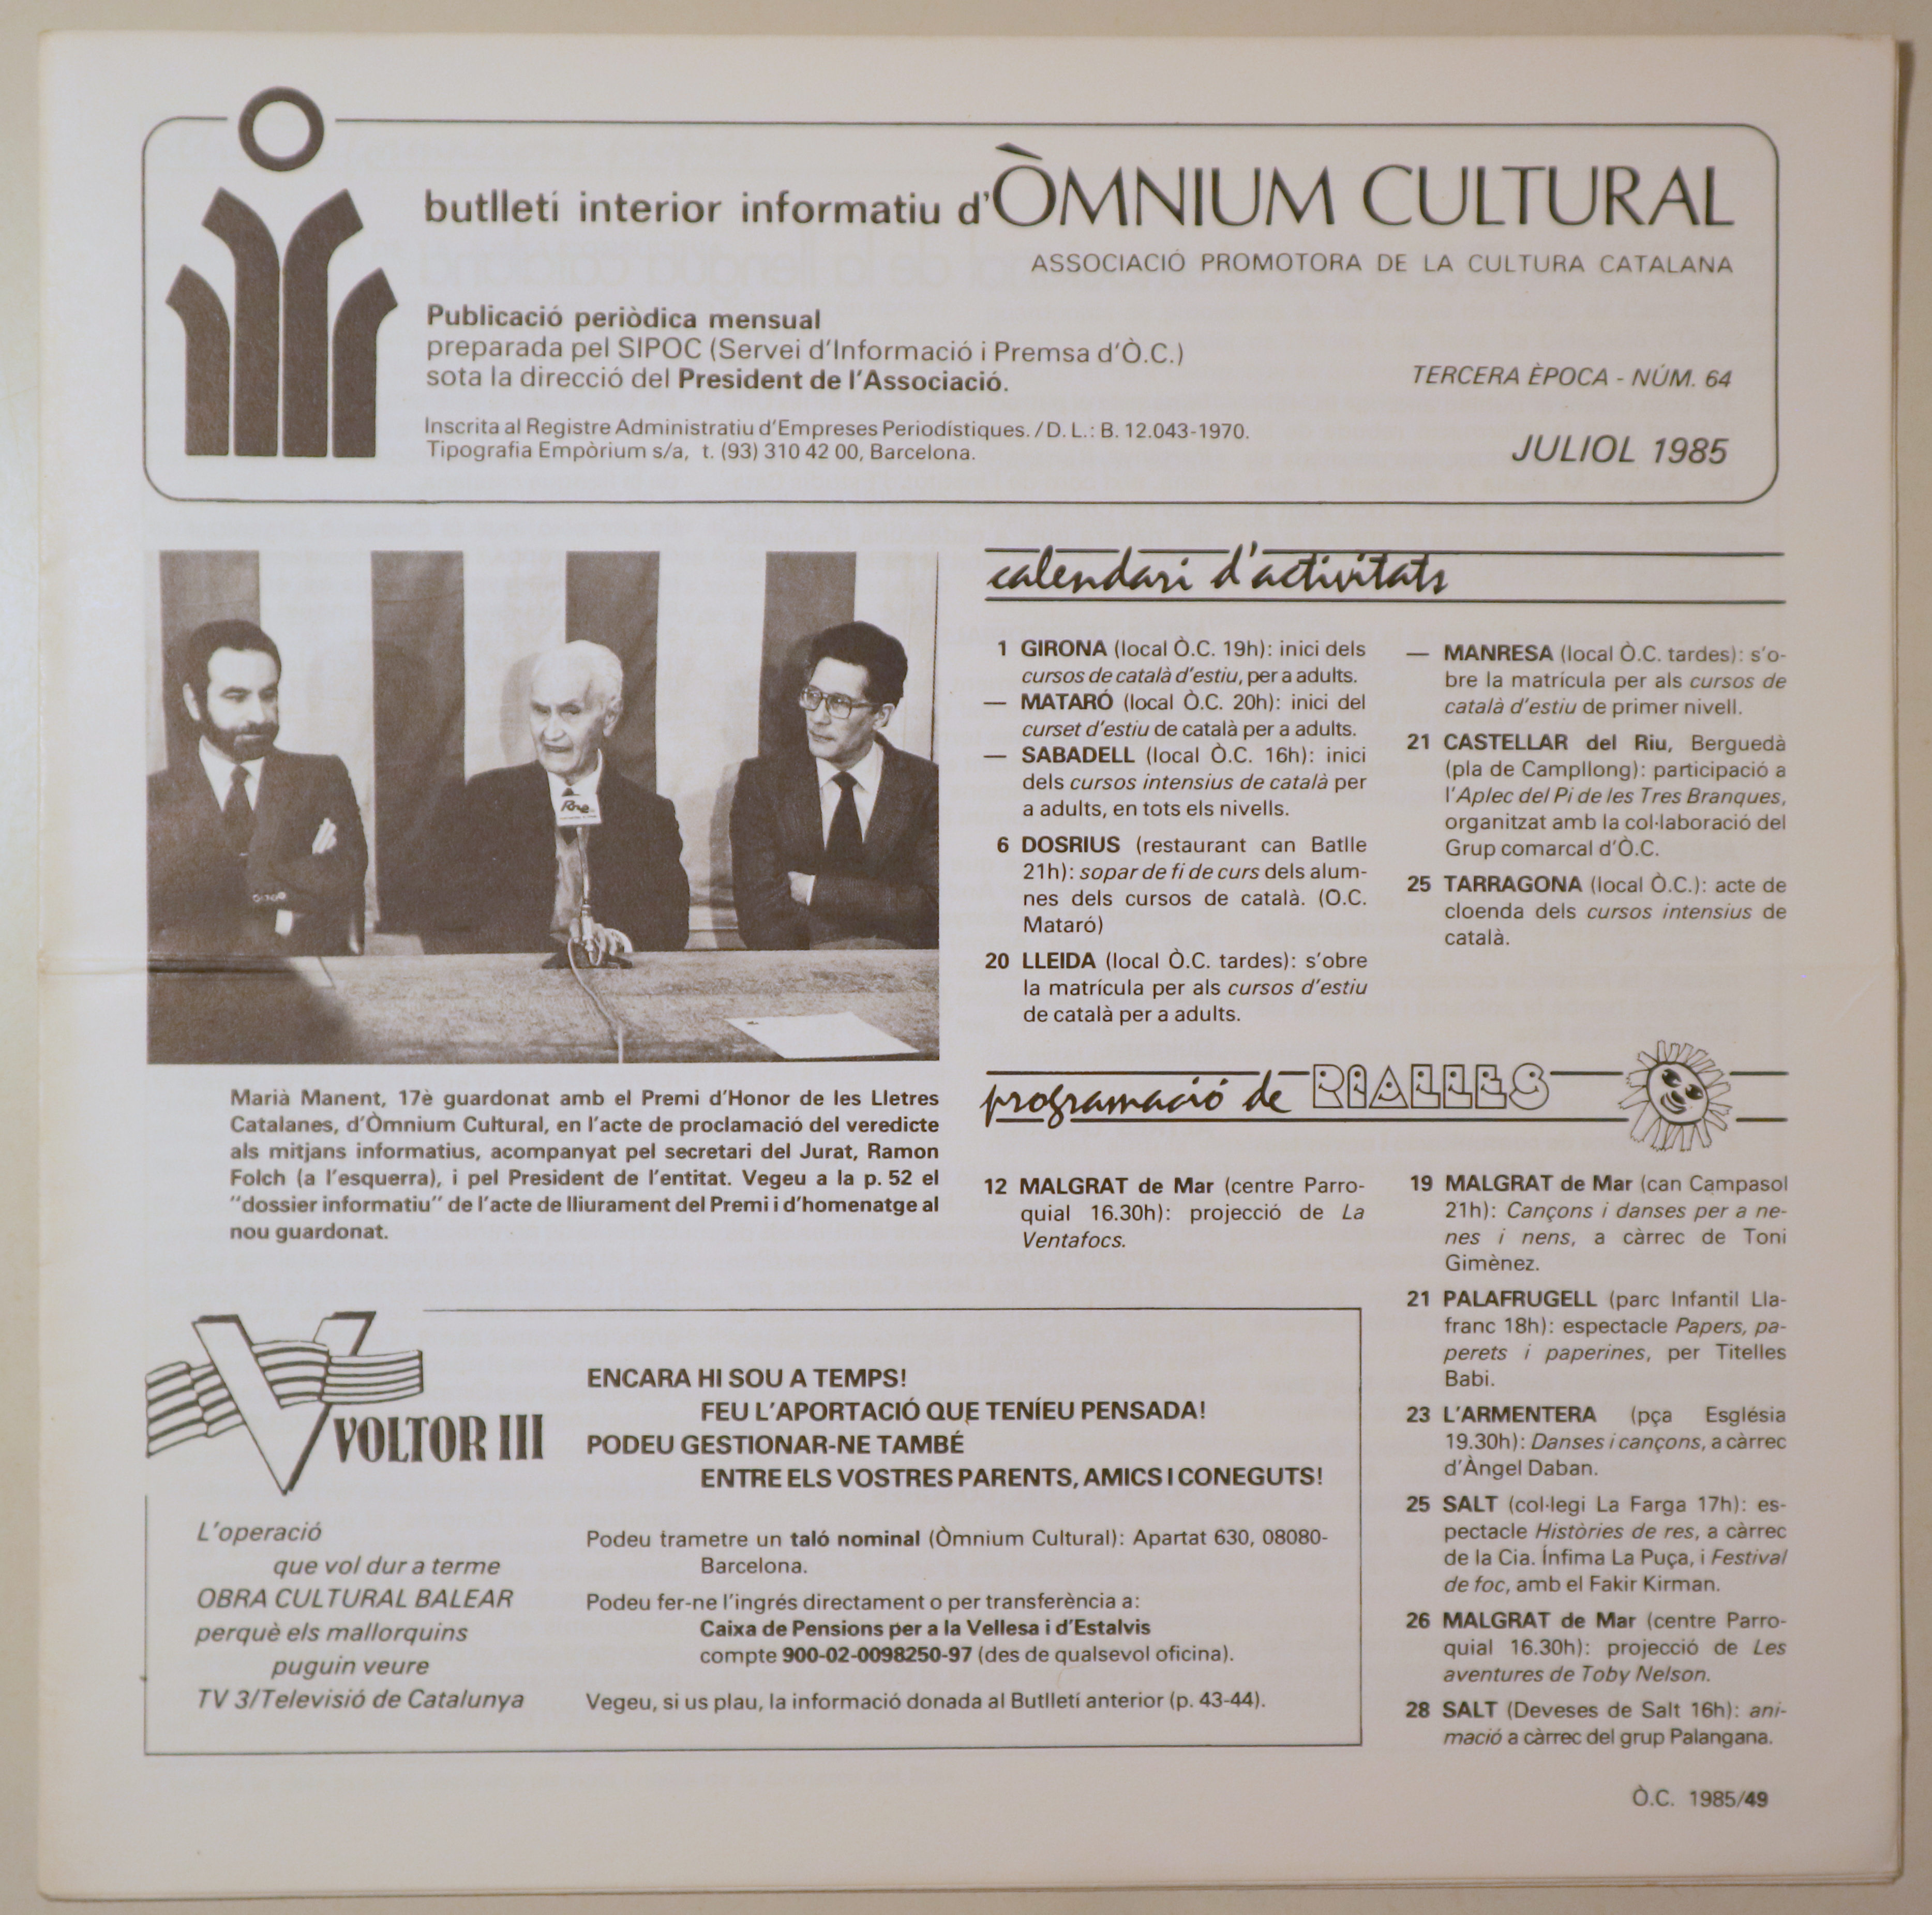 BUTLLETÍ INTERIOR INFORMATIU D'ÒMNIUM CULTURAL 3ª època, núm. 64. Juliol 1985 - Barcelona 1985 - Il·lustrat